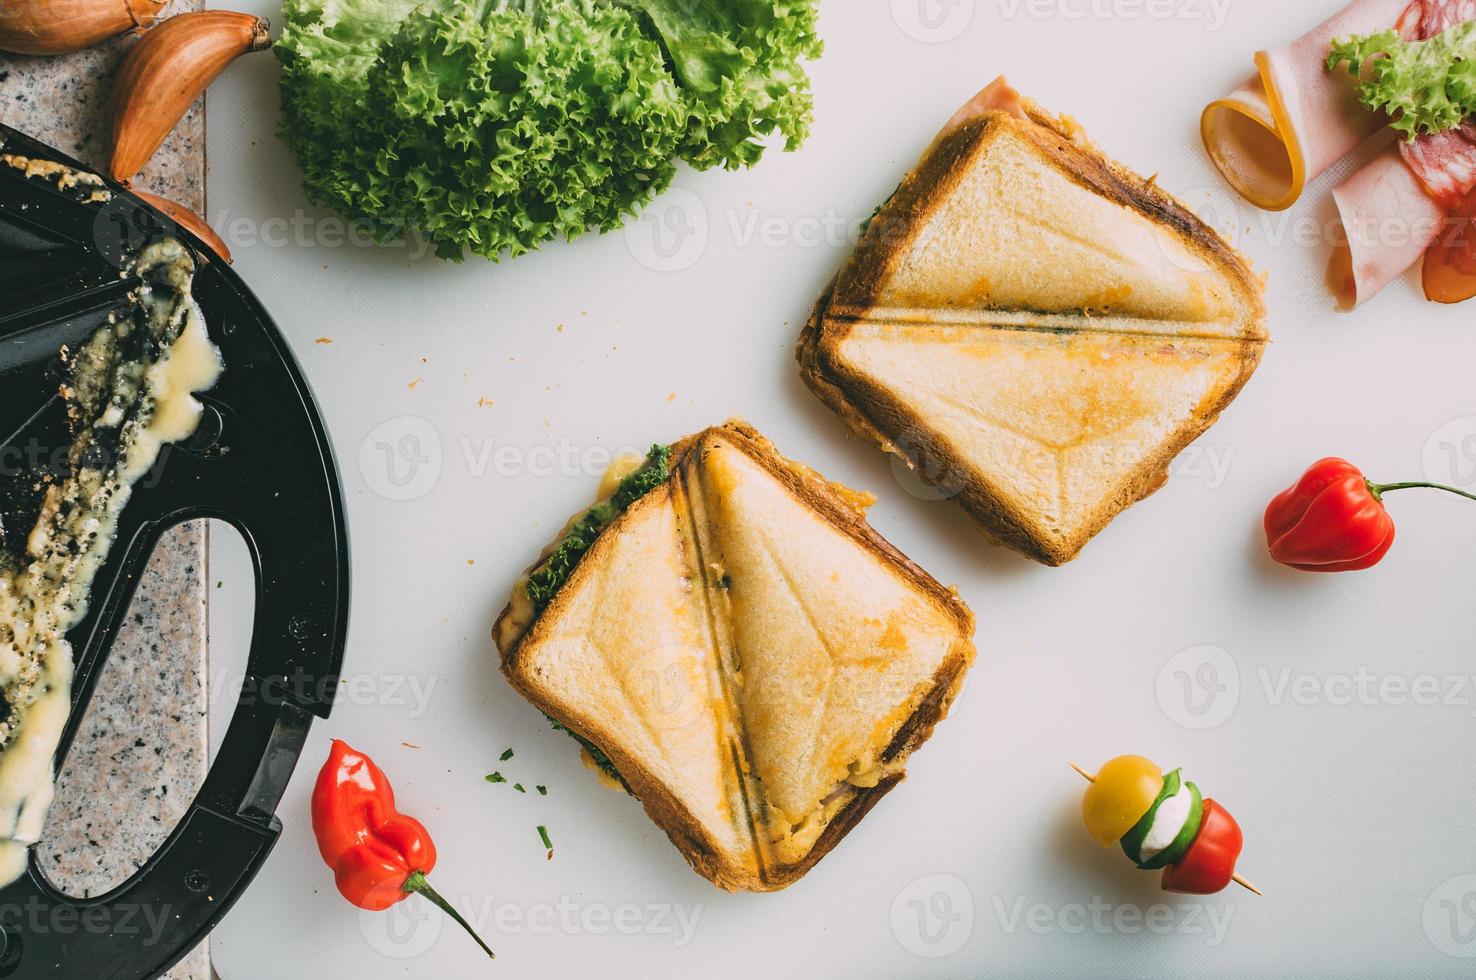 club sandwich con prosciutto, salame, manzo affumicato, formaggio, lattuga e rucola. preparazione del toast sandwich. vista dall'alto. foto